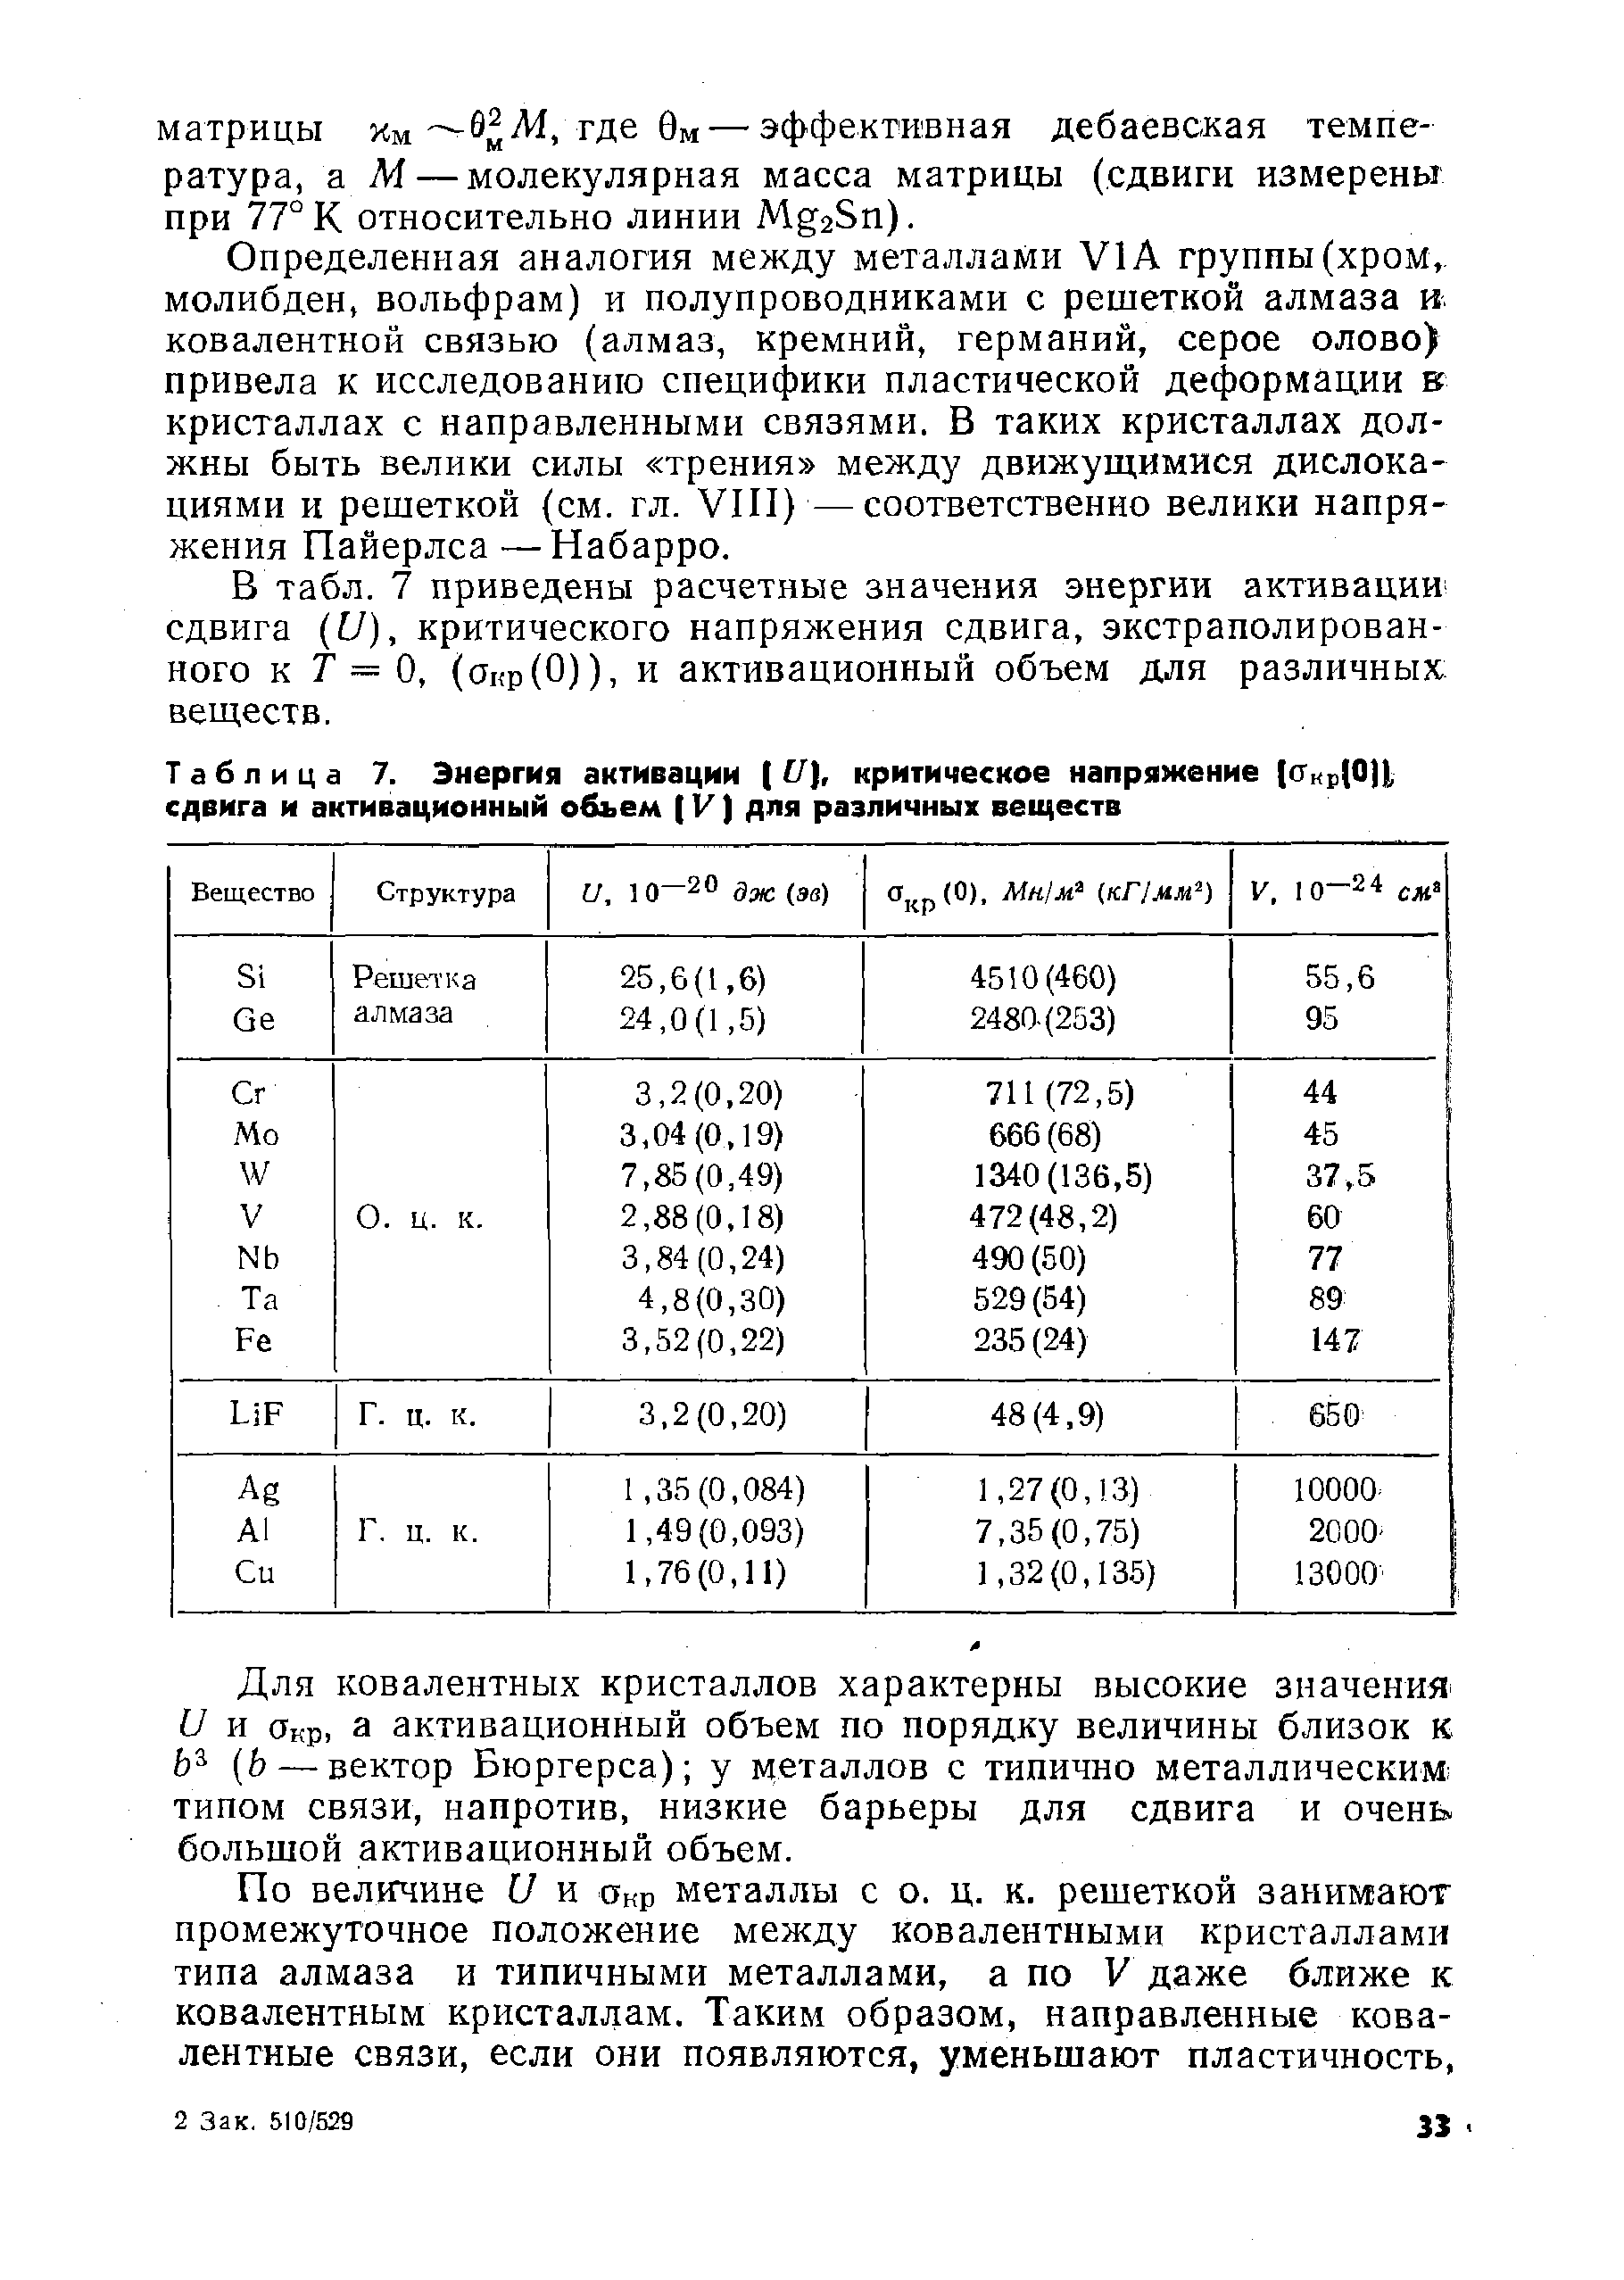 Таблица 7. <a href="/info/1860">Энергия активации</a> (17), <a href="/info/5967">критическое напряжение</a> ((Ткр(0)1, сдвига и активационный объем (V) для различных веществ
